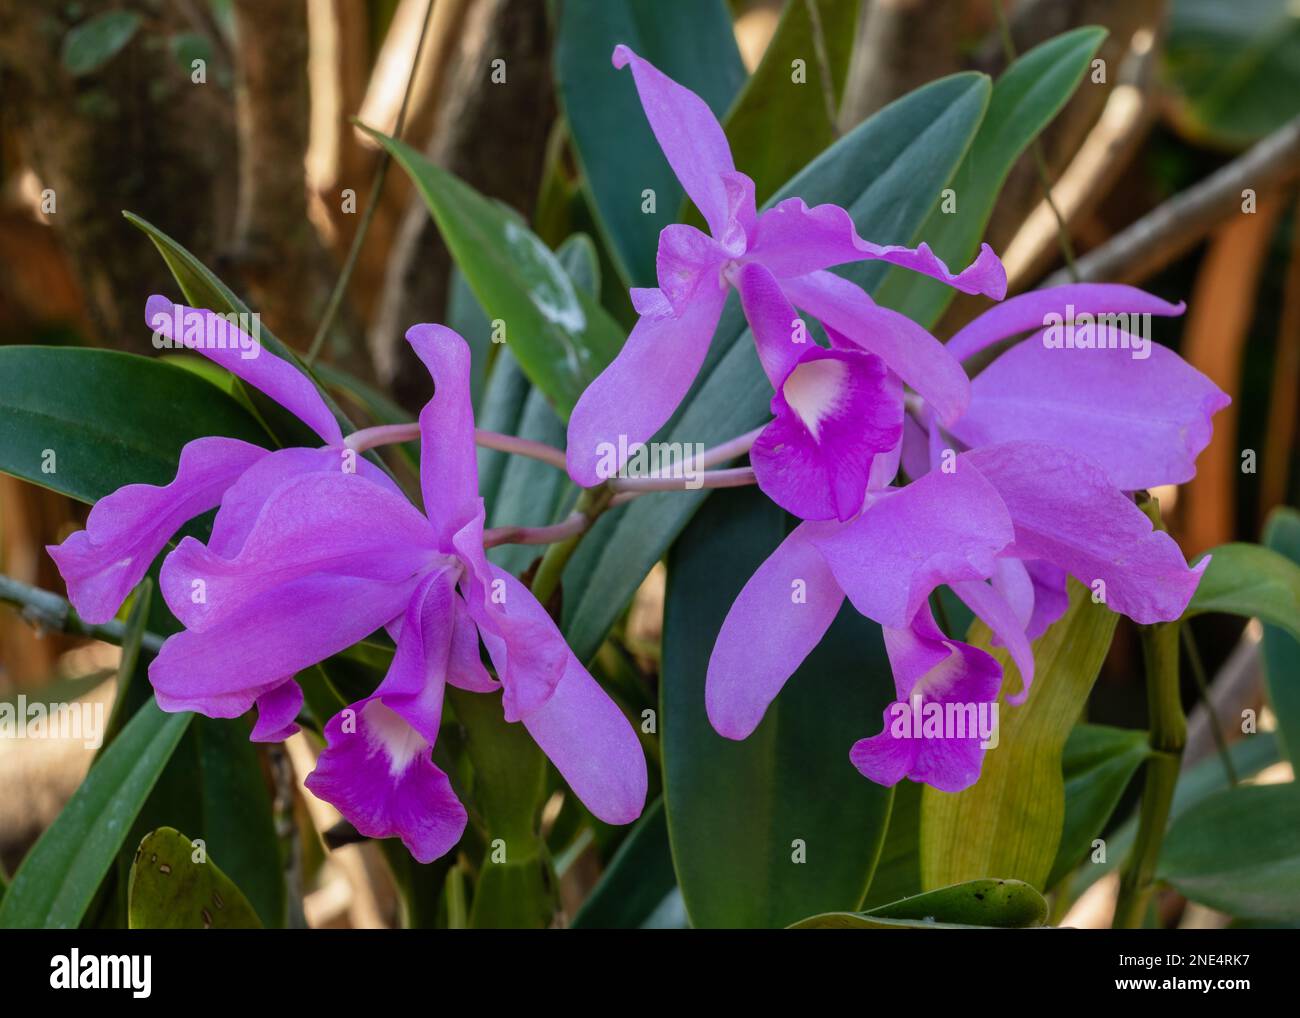 Vista in primo piano di fiori bianchi e viola luminosi di cattleya orchidea ibrida fioritura all'aperto su sfondo naturale Foto Stock